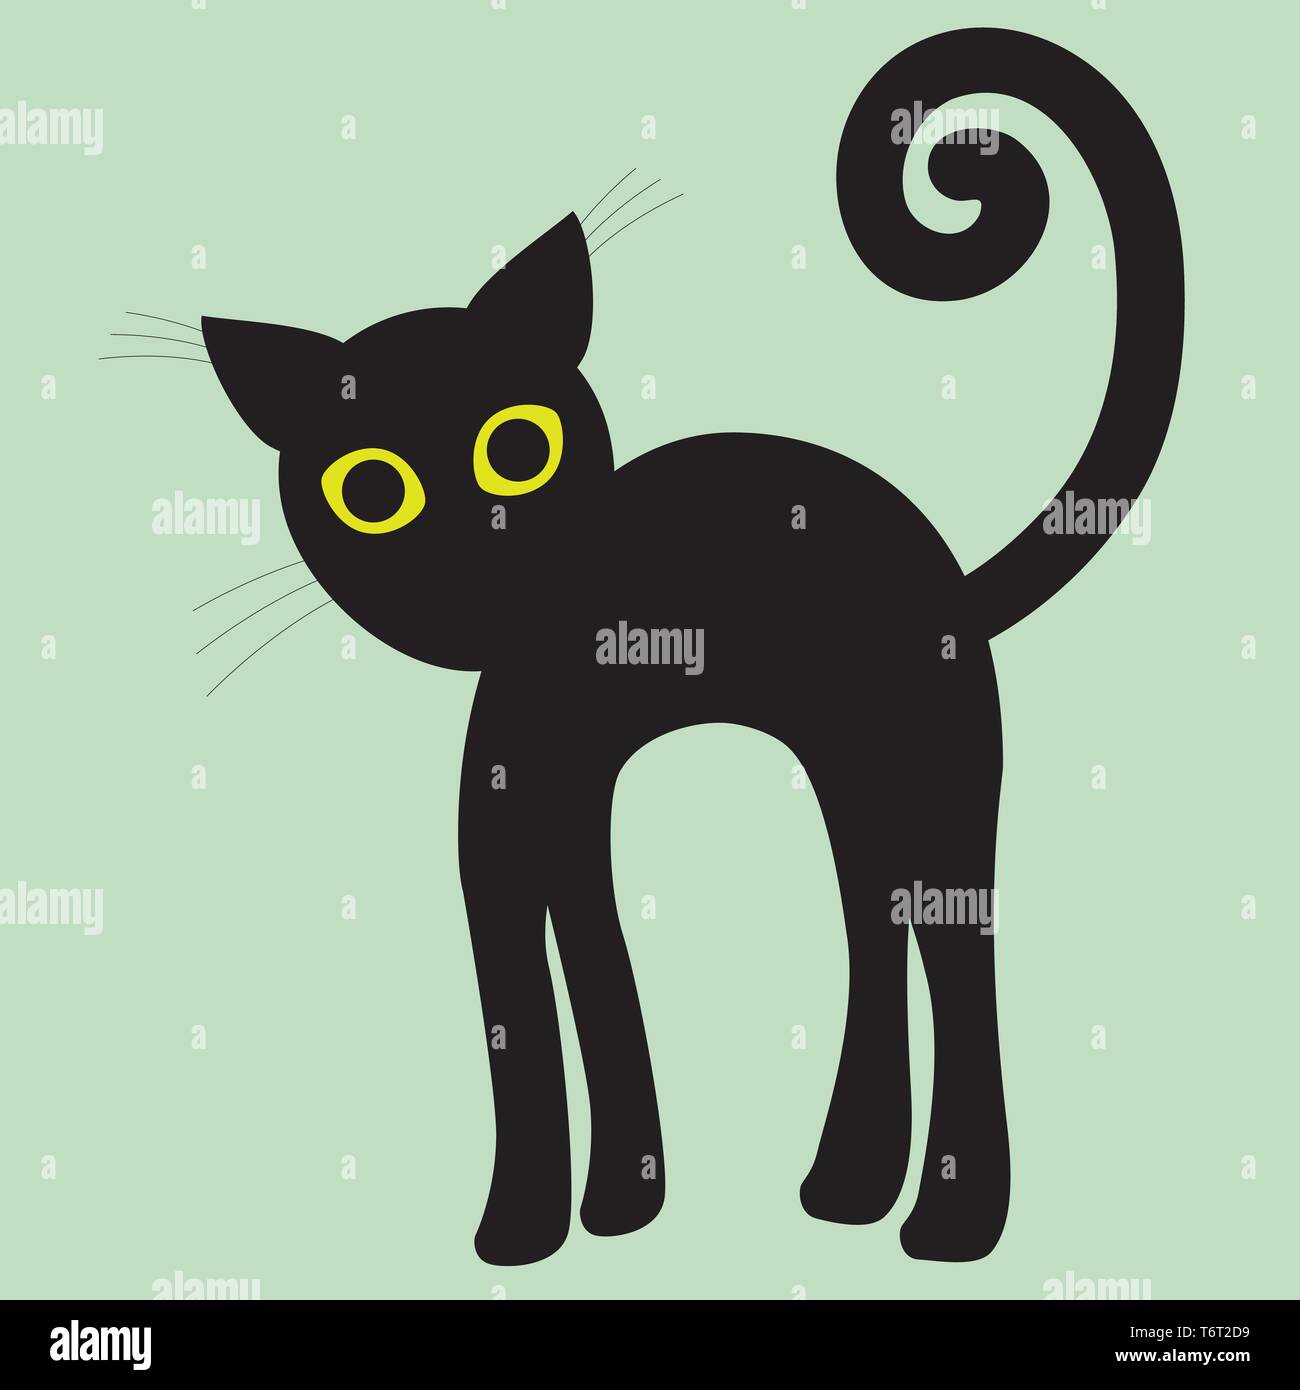 Un simple dessin silhouette d'un chat noir aux yeux verts avec un dossier haut. Position en colère Illustration de Vecteur